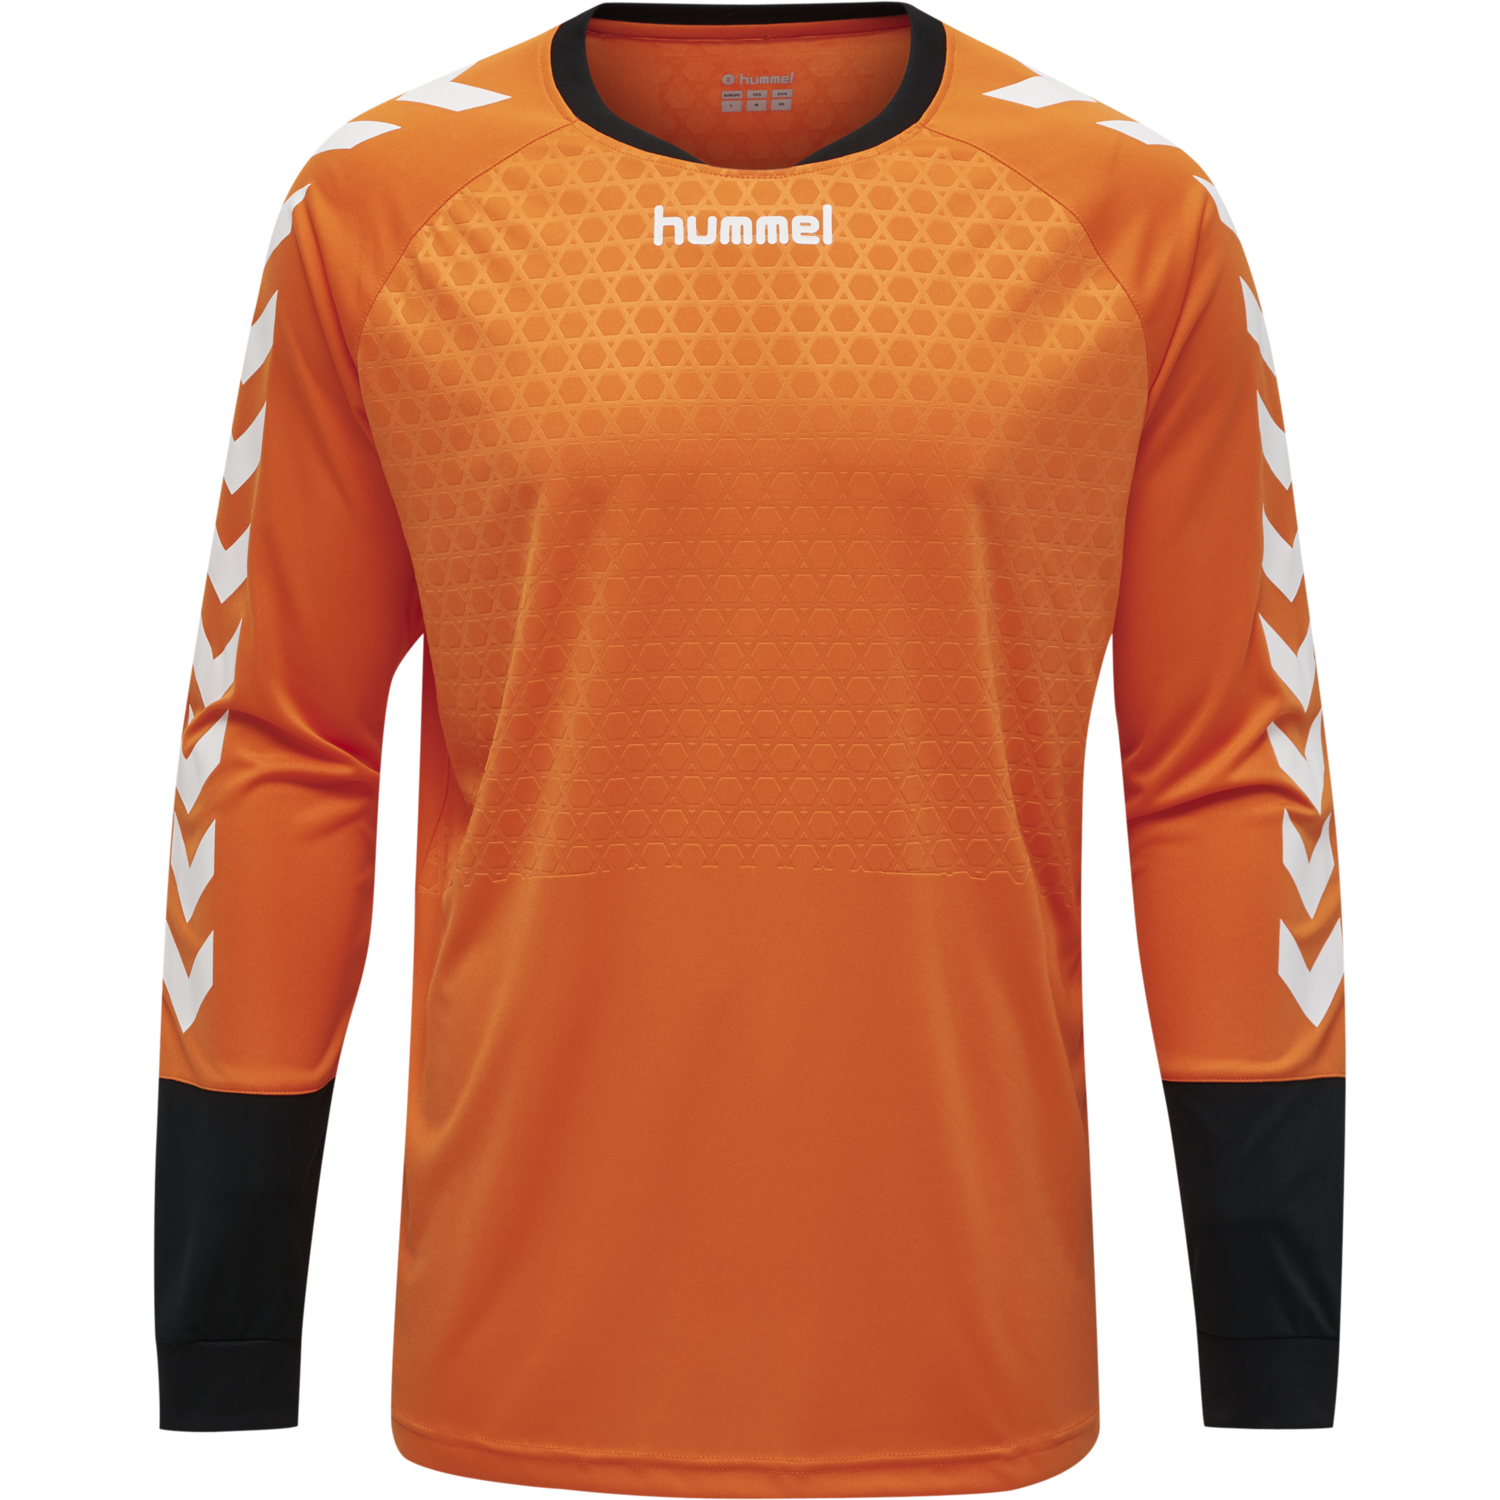 Details about   Hummel Football Kids Goalkeeper GK Set/Kit Long Sleeve Jersey/Shirt Shorts 